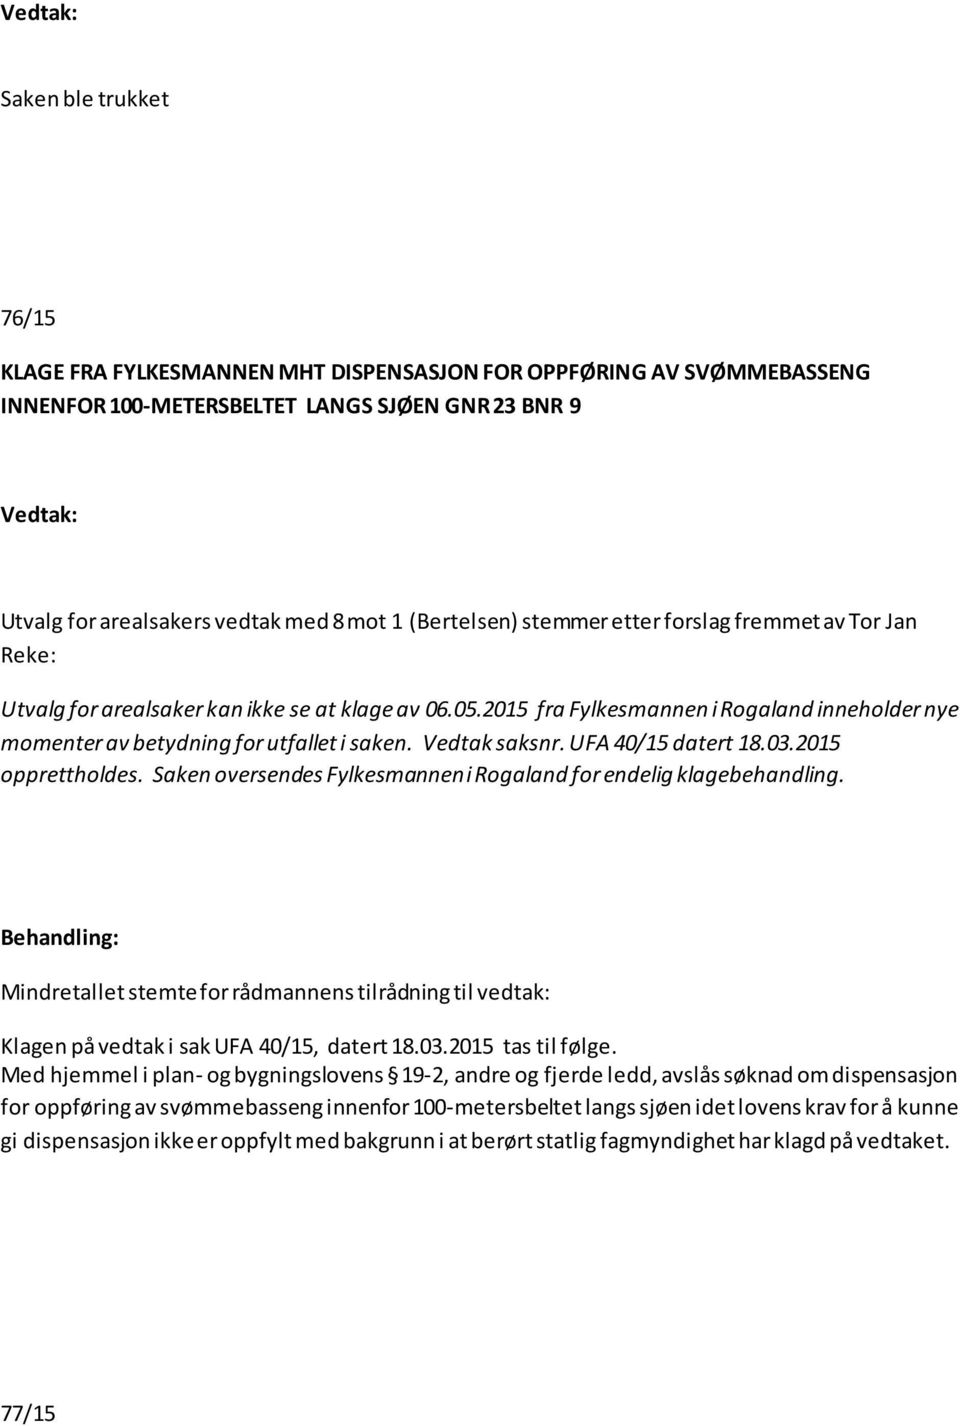 Vedtak saksnr. UFA 40/15 datert 18.03.2015 opprettholdes. Saken oversendes Fylkesmannen i Rogaland for endelig klagebehandling.